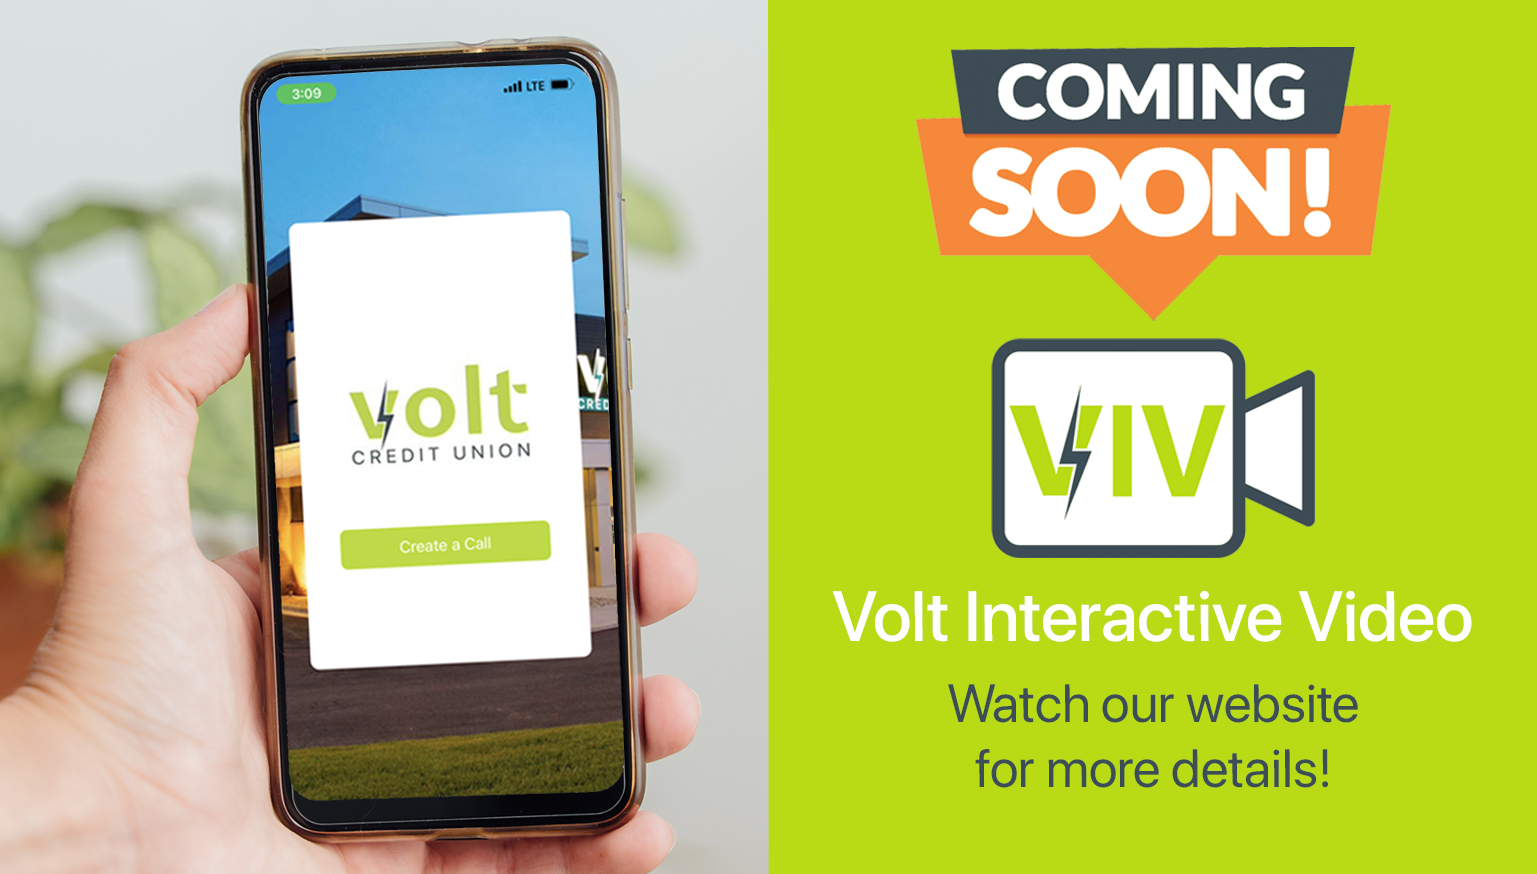 Coming Soon - VIV